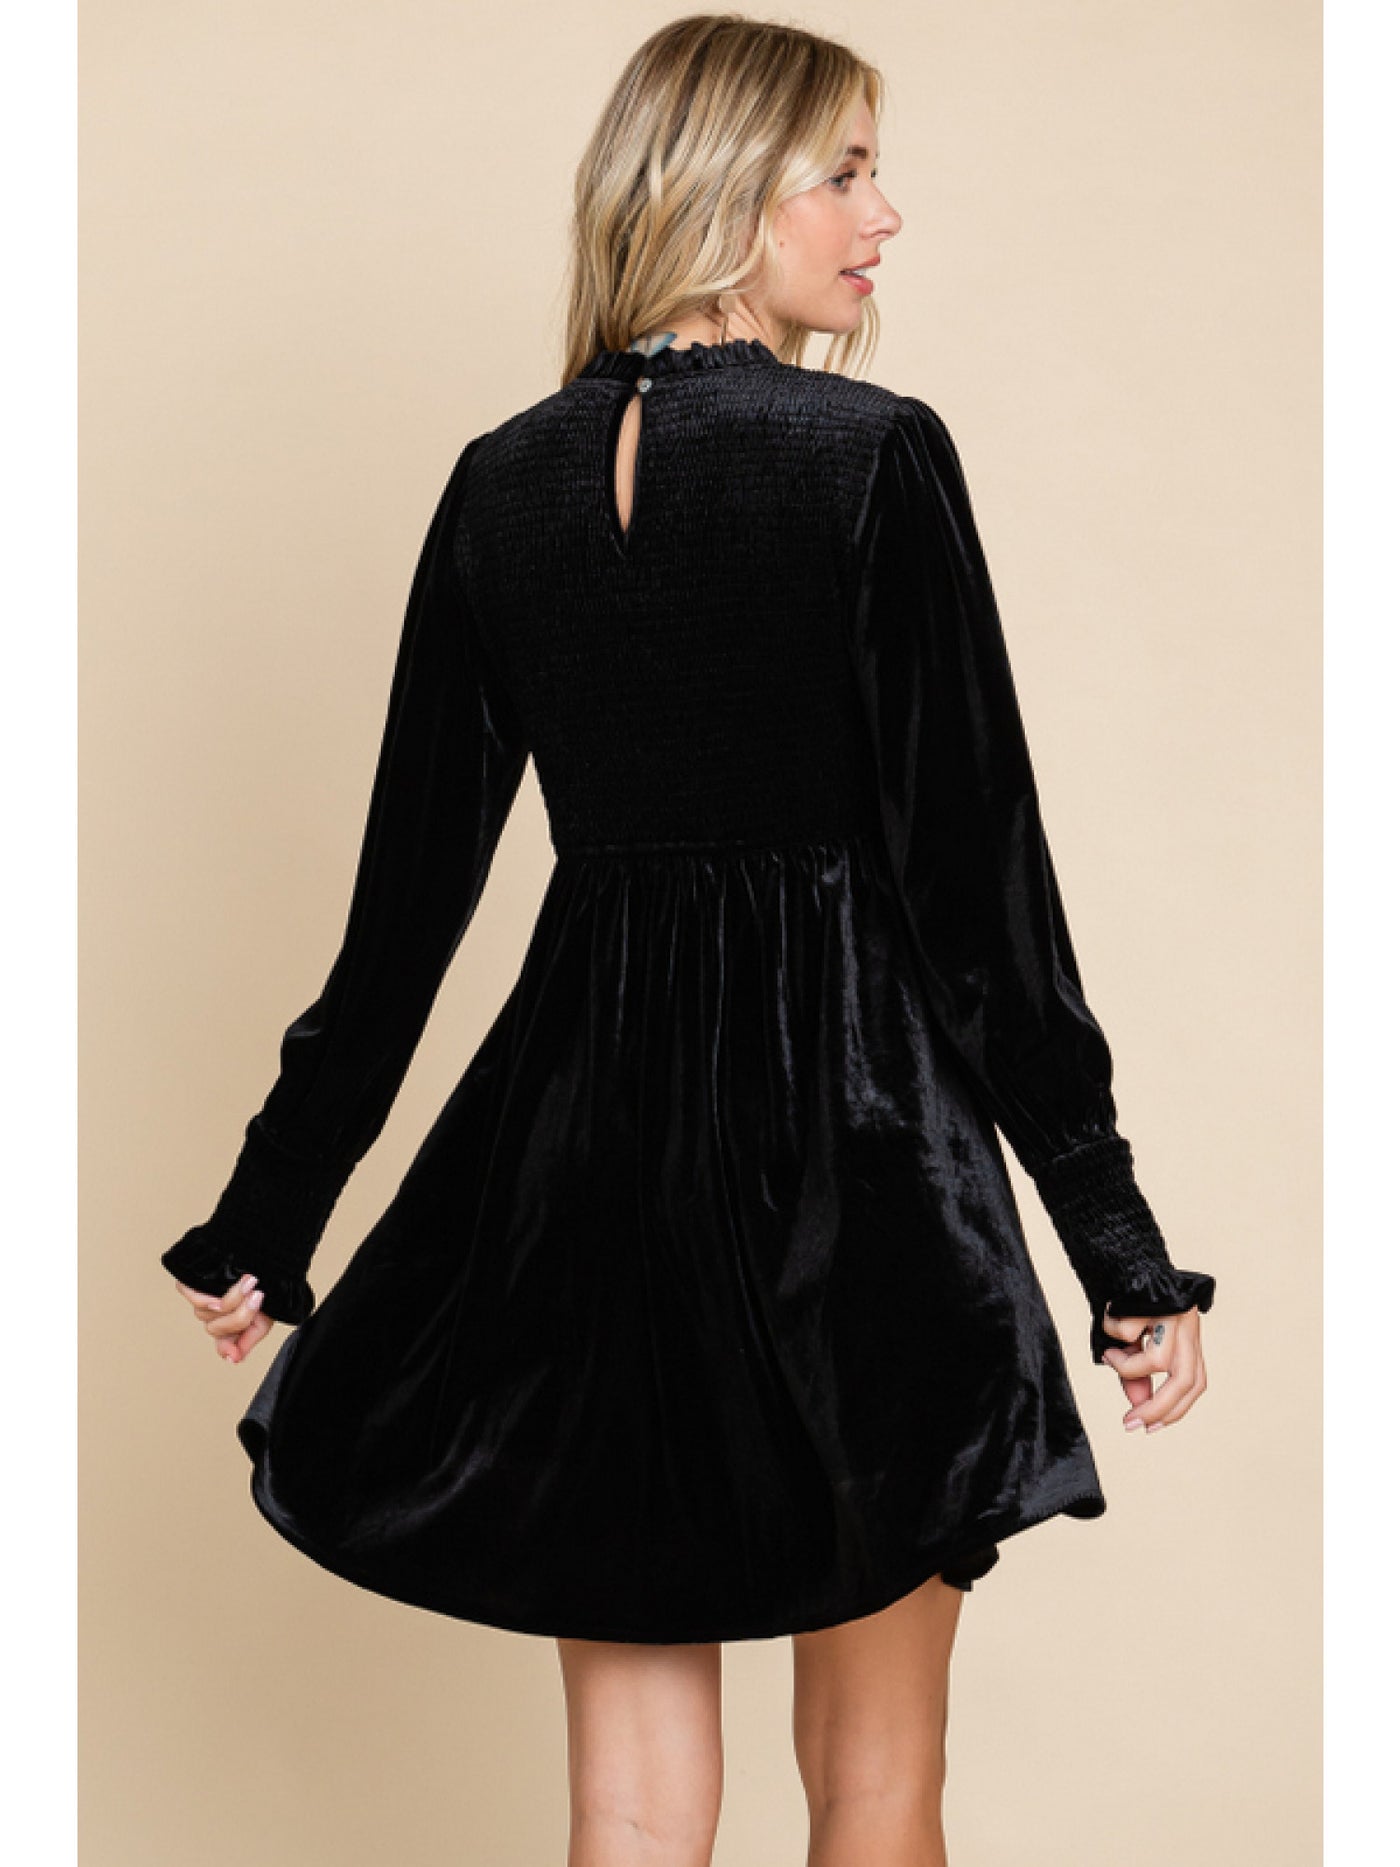 Black Smocked Velvet Dress with Frilled Neck